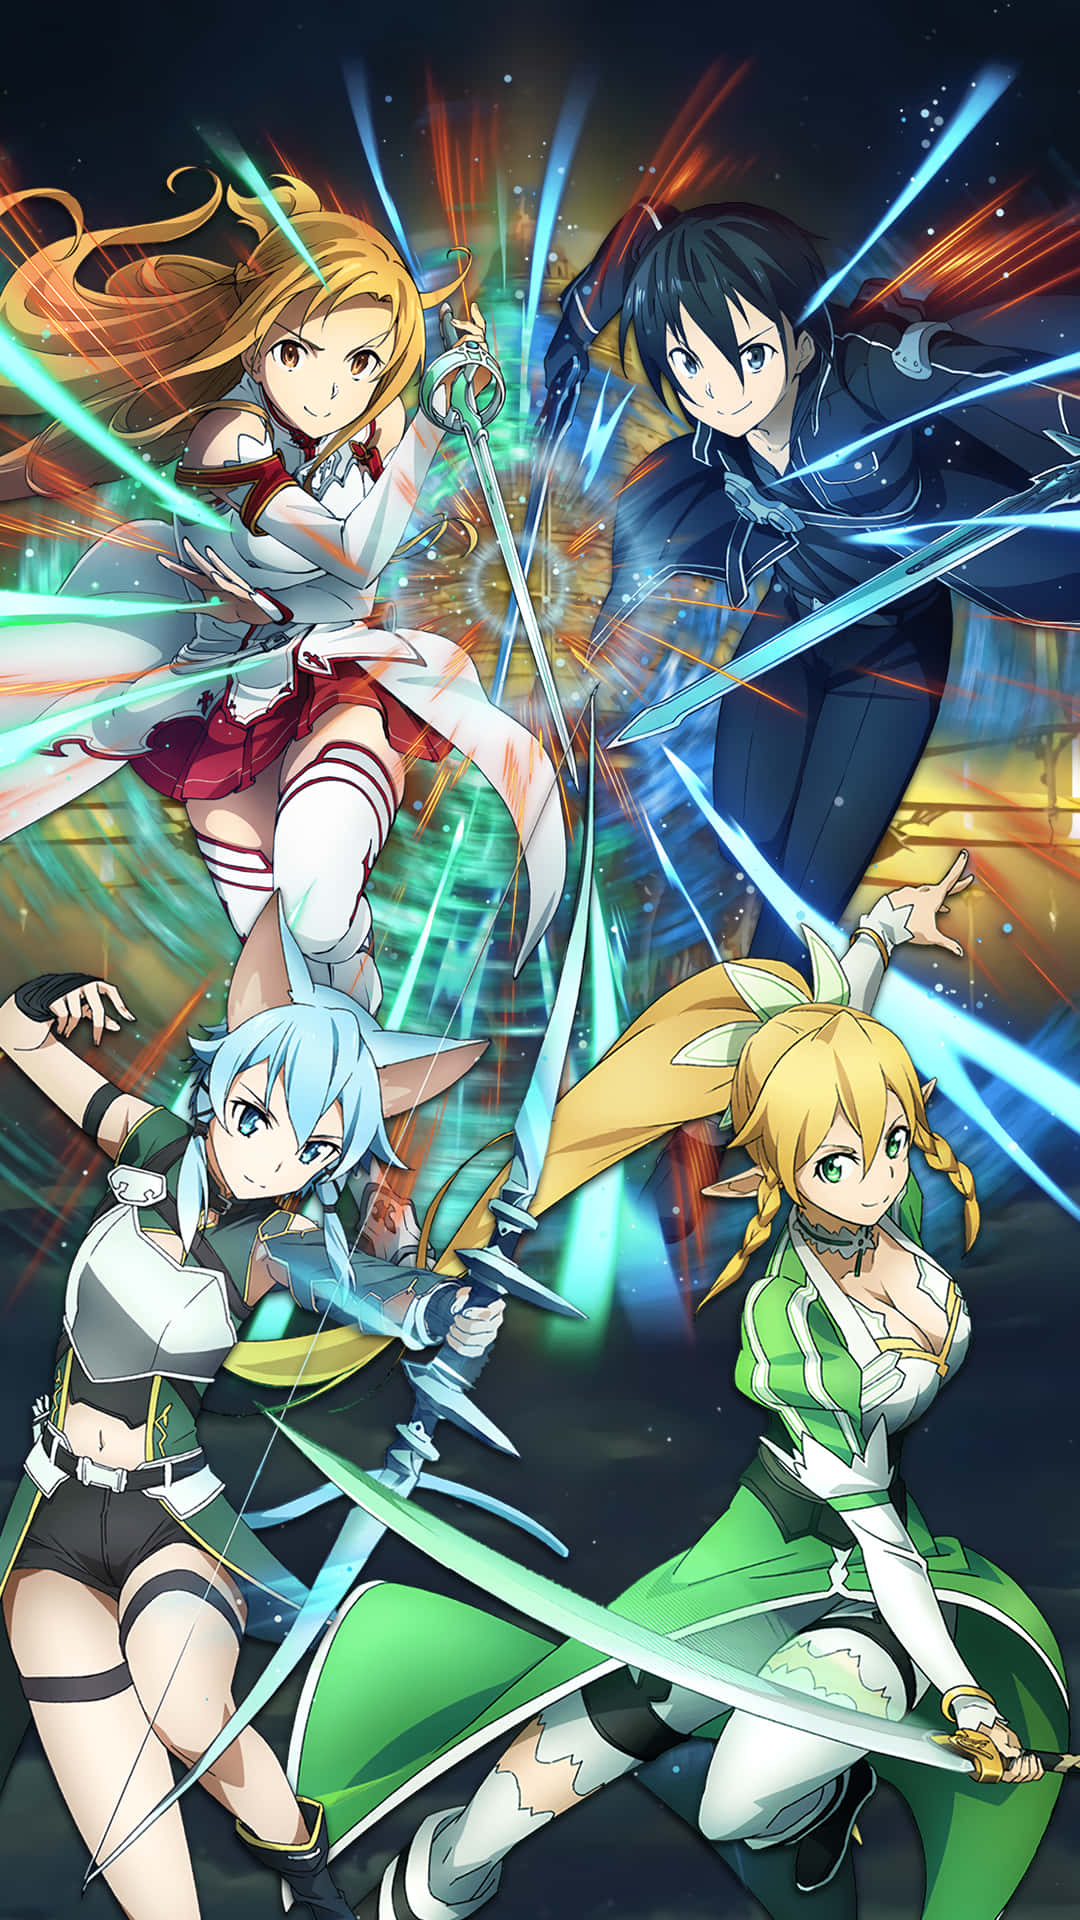 En gruppe anime-karakterer med sværd og pistoler, der kæmper i et magisk land. Wallpaper